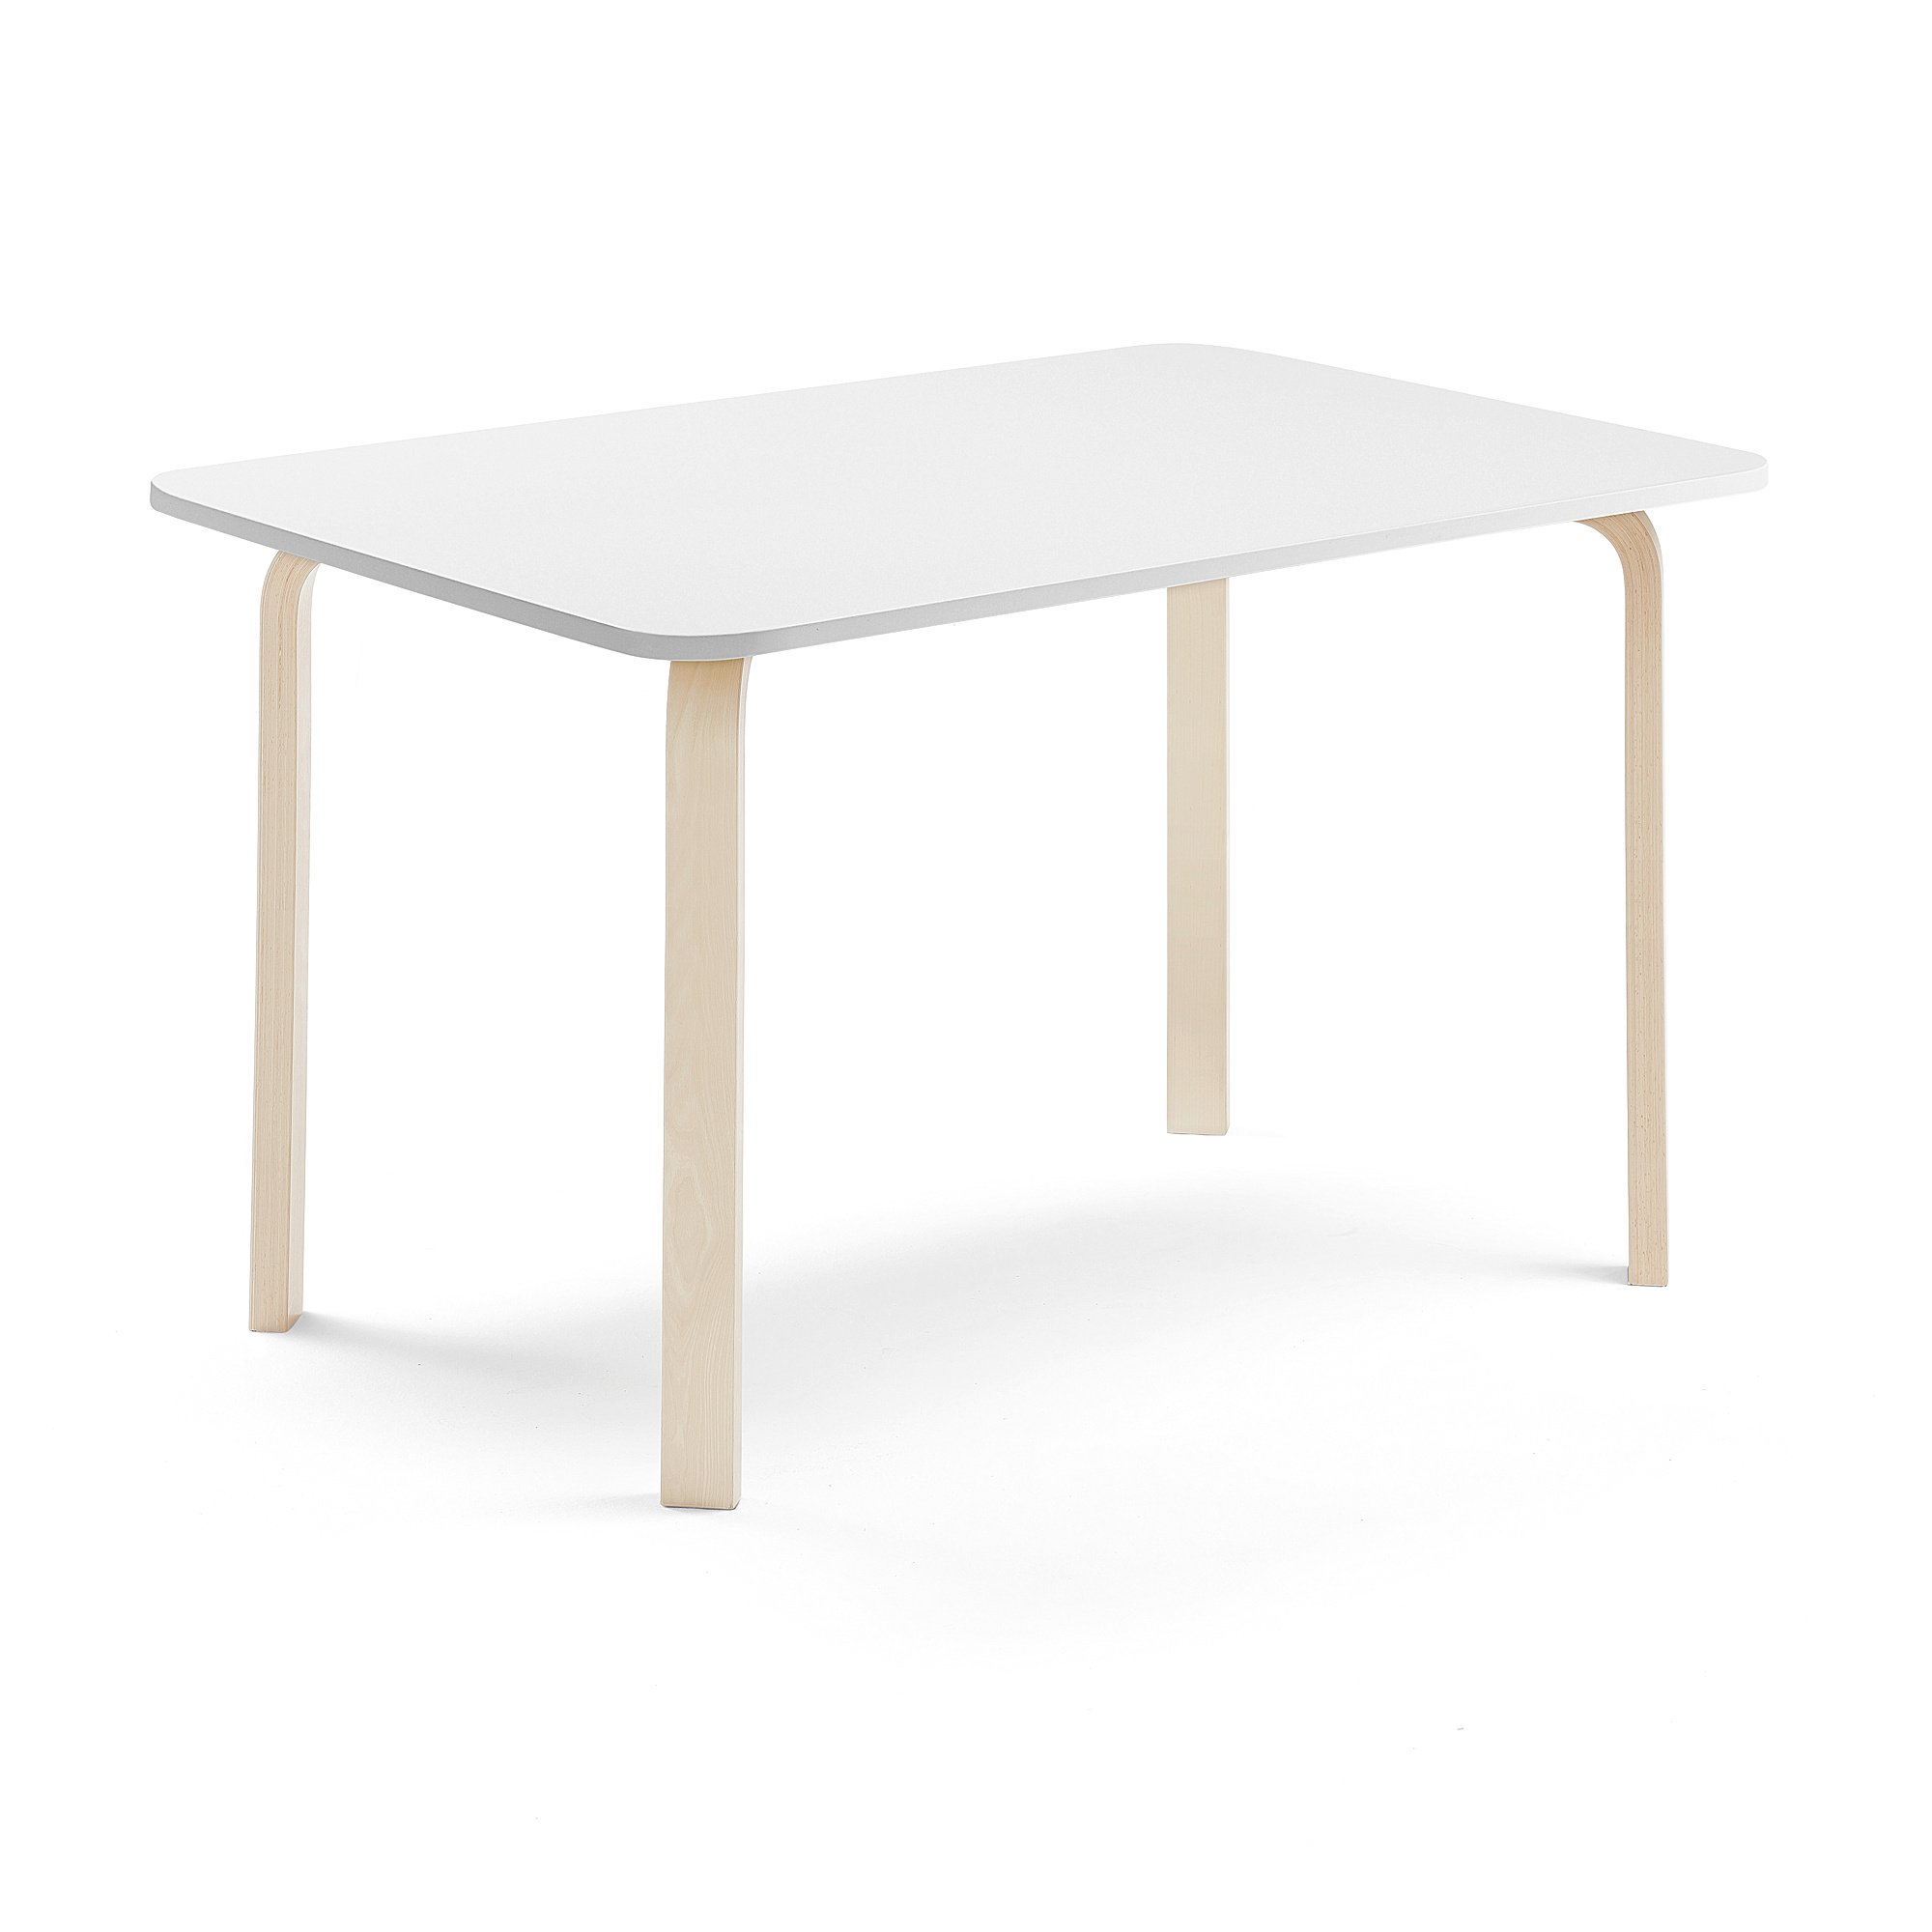 Stůl ELTON, 1400x700x710 mm, bříza, akustická HPL deska, bílá